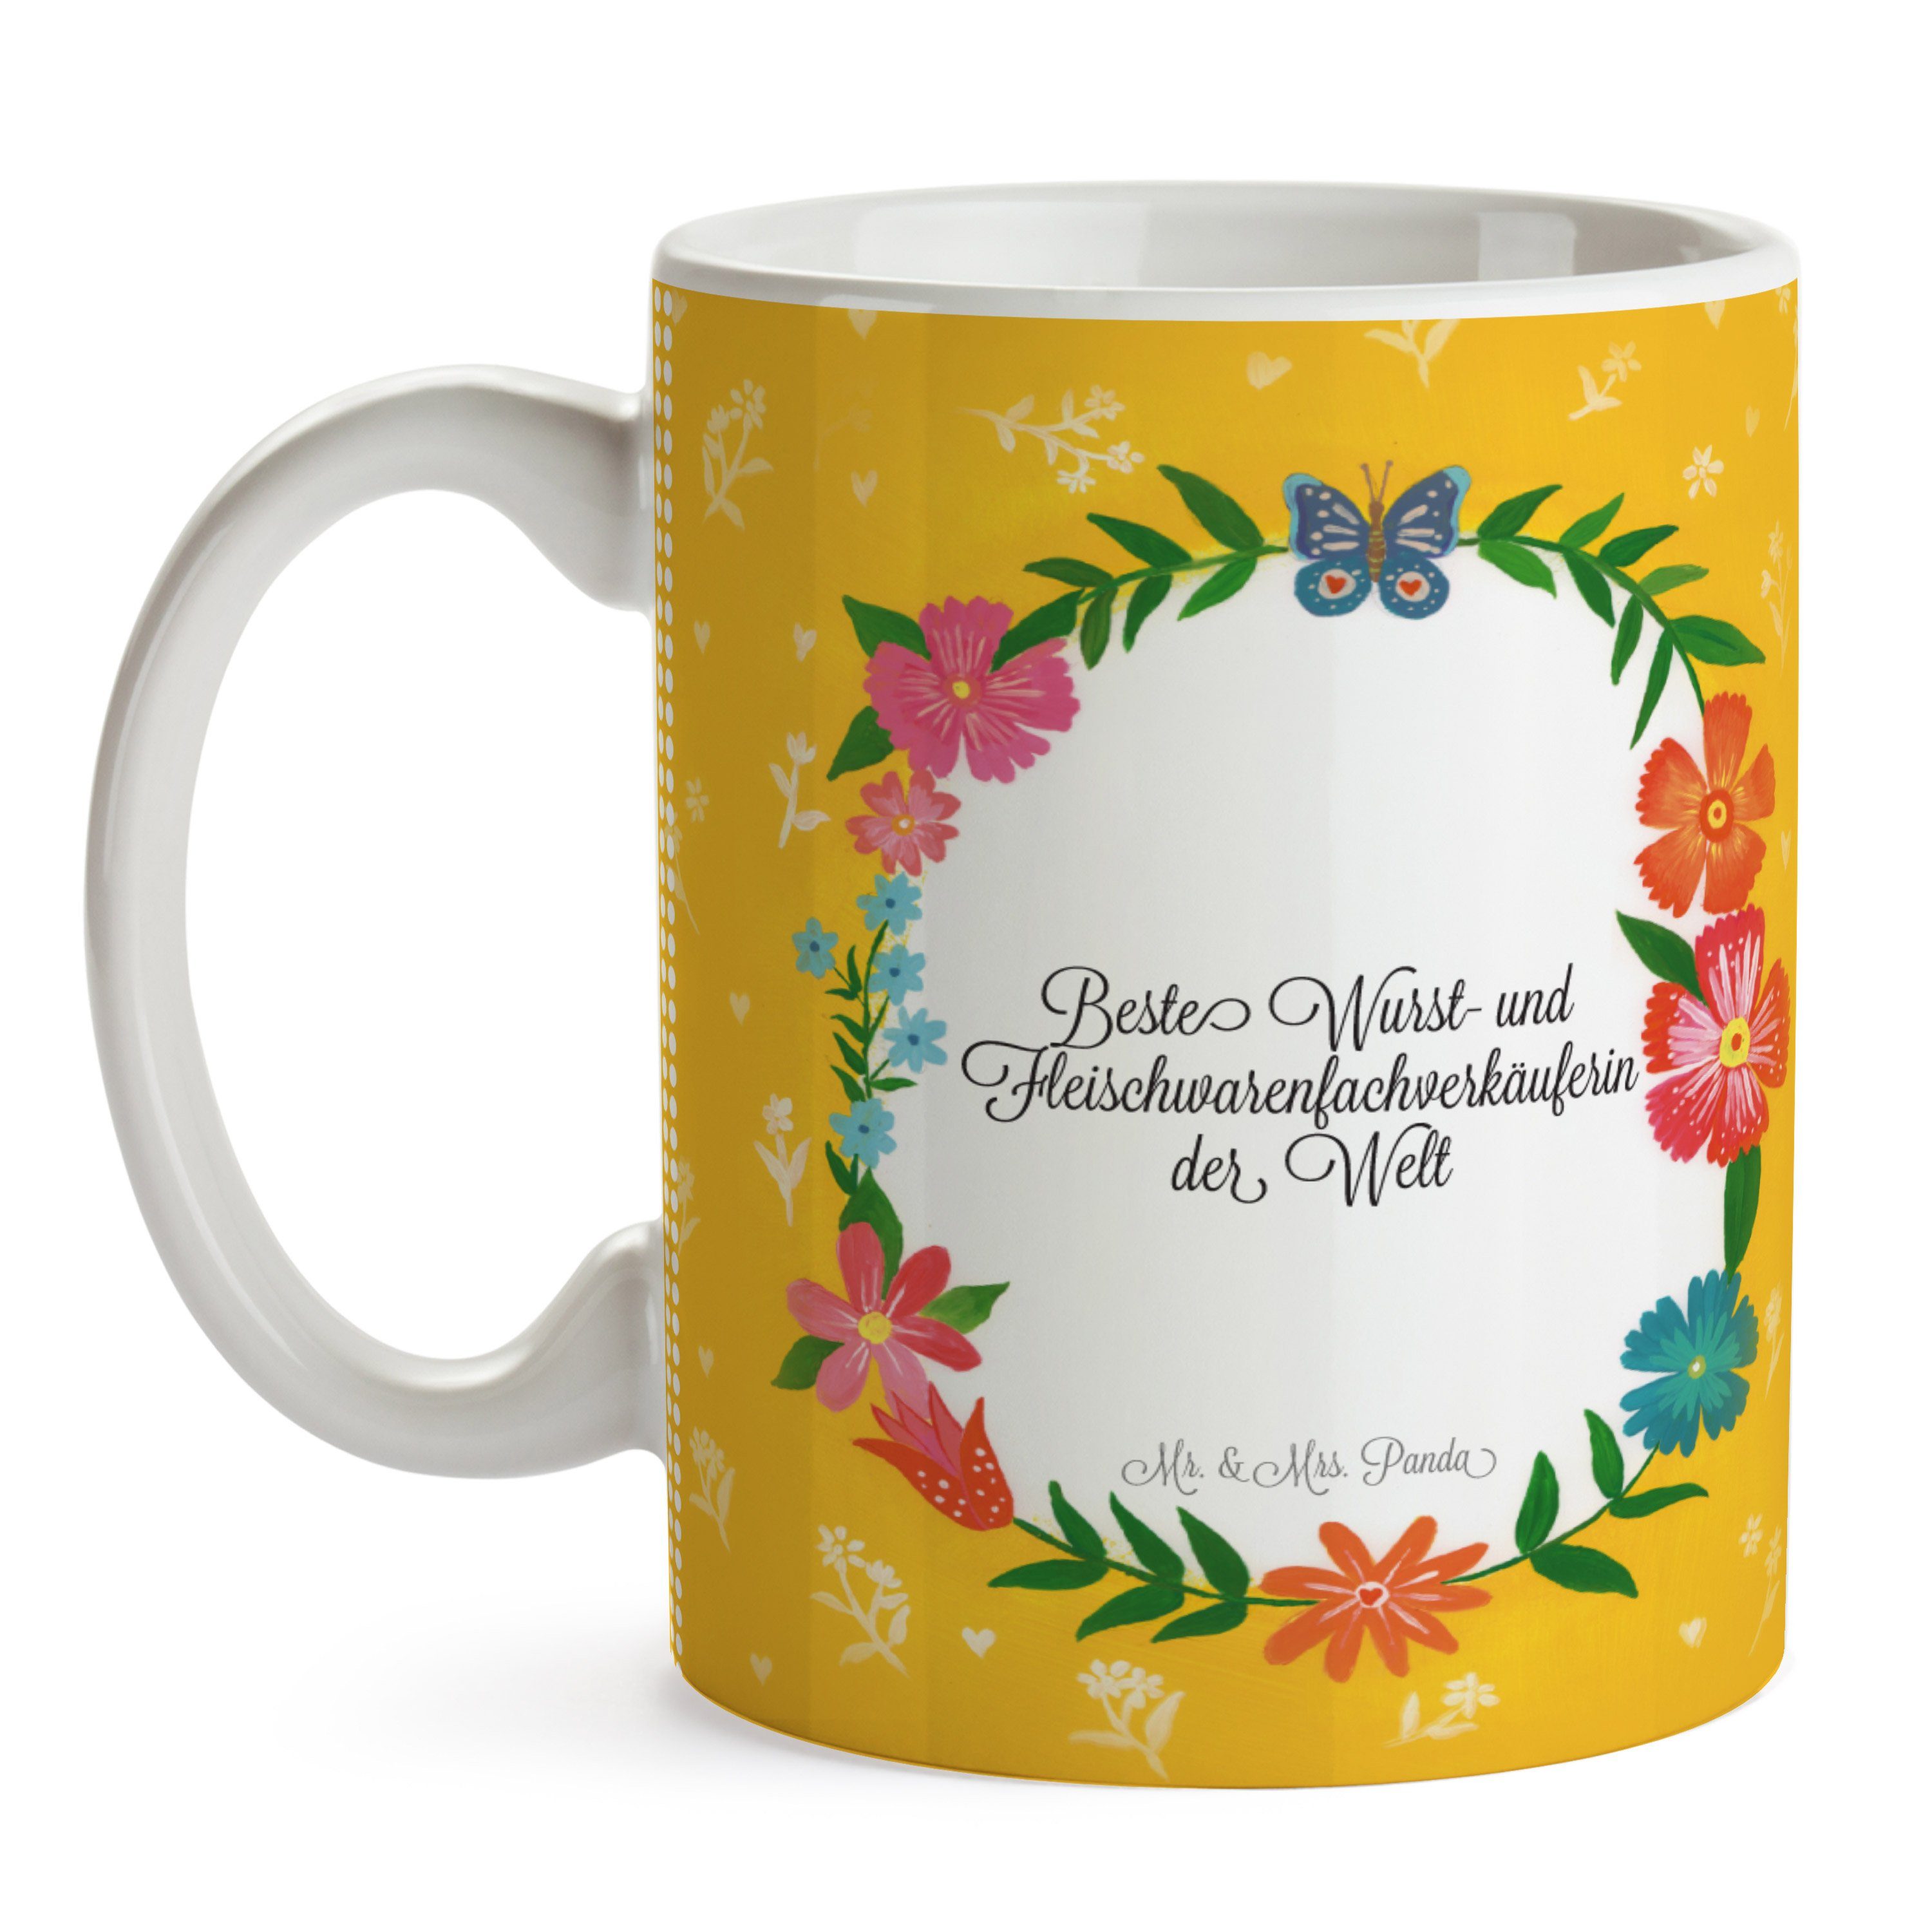 Mr. & Mrs. Panda und Geschenk, Kaffe, Wurst- Fleischwarenfachverkäuferin - Gratulation, Keramik Tasse